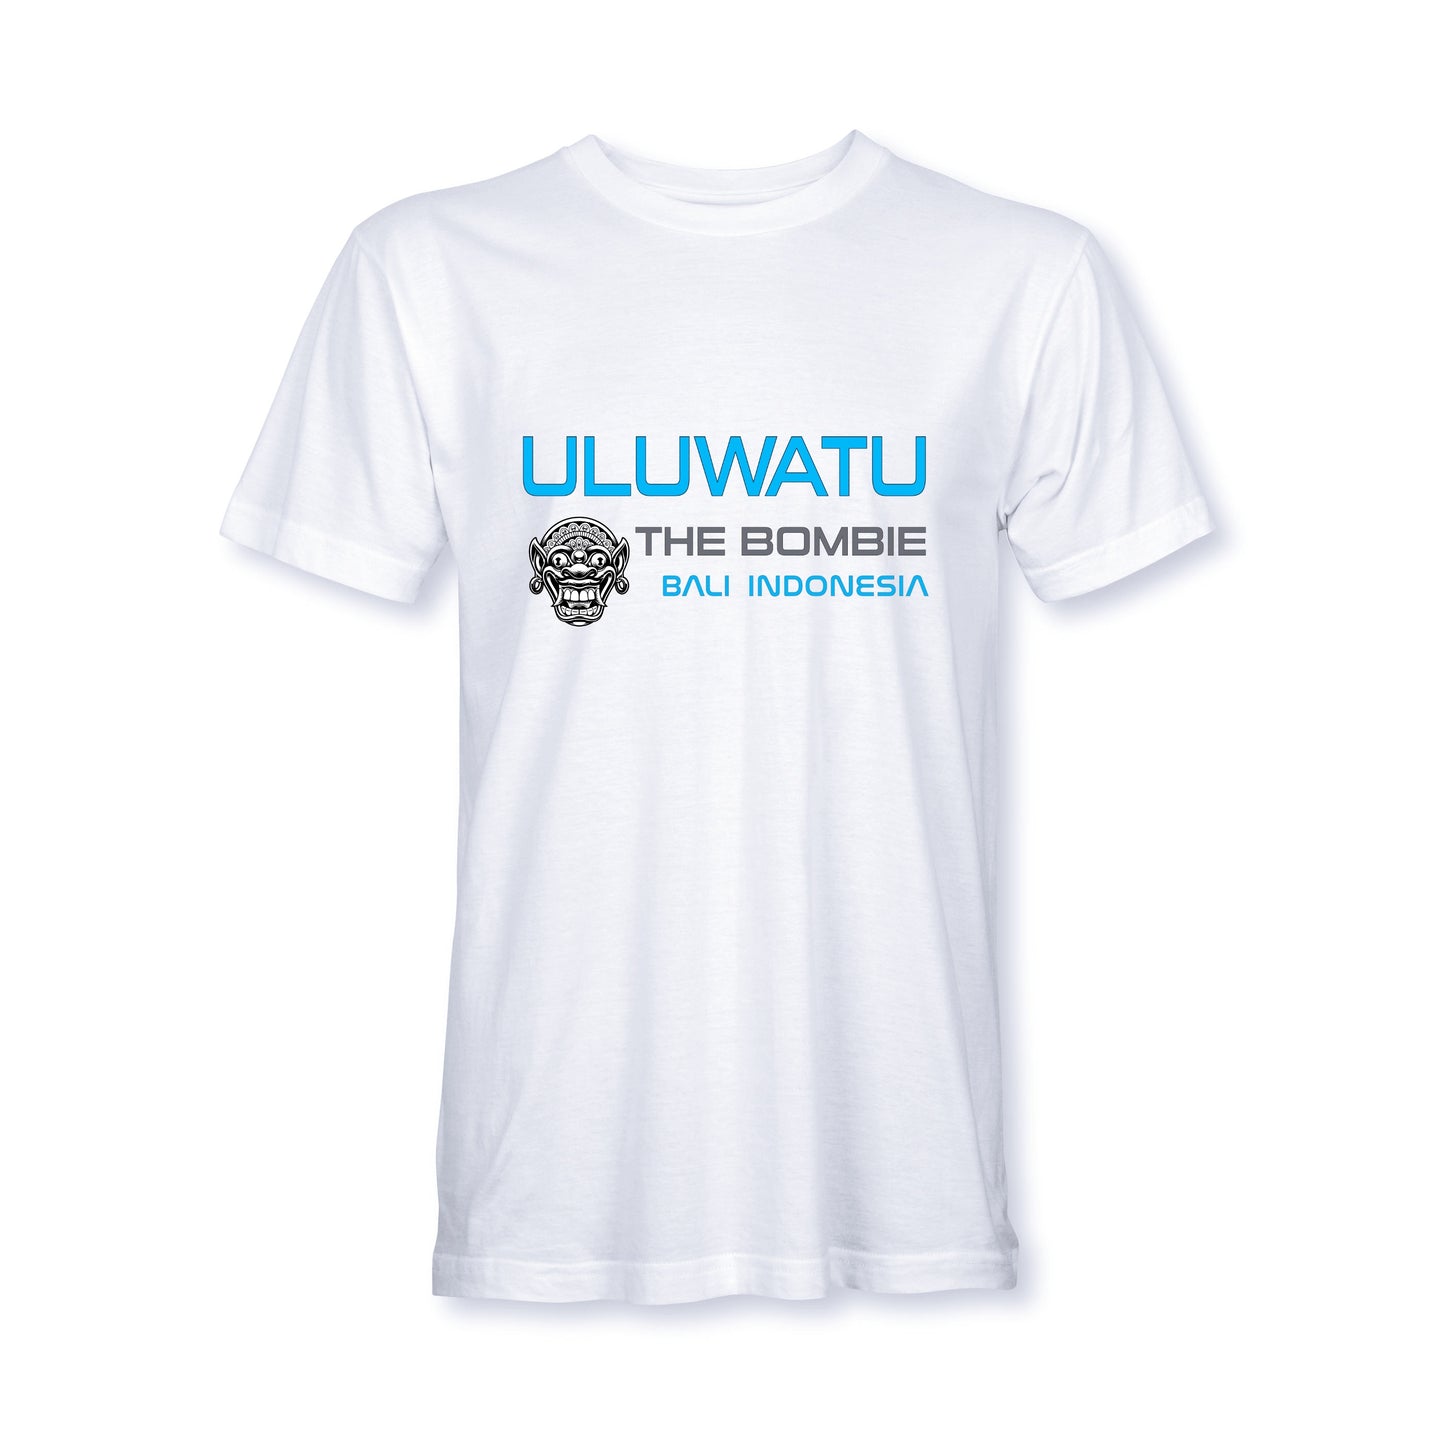 "The Bombie" Uluwatu Bali surf t-shirt